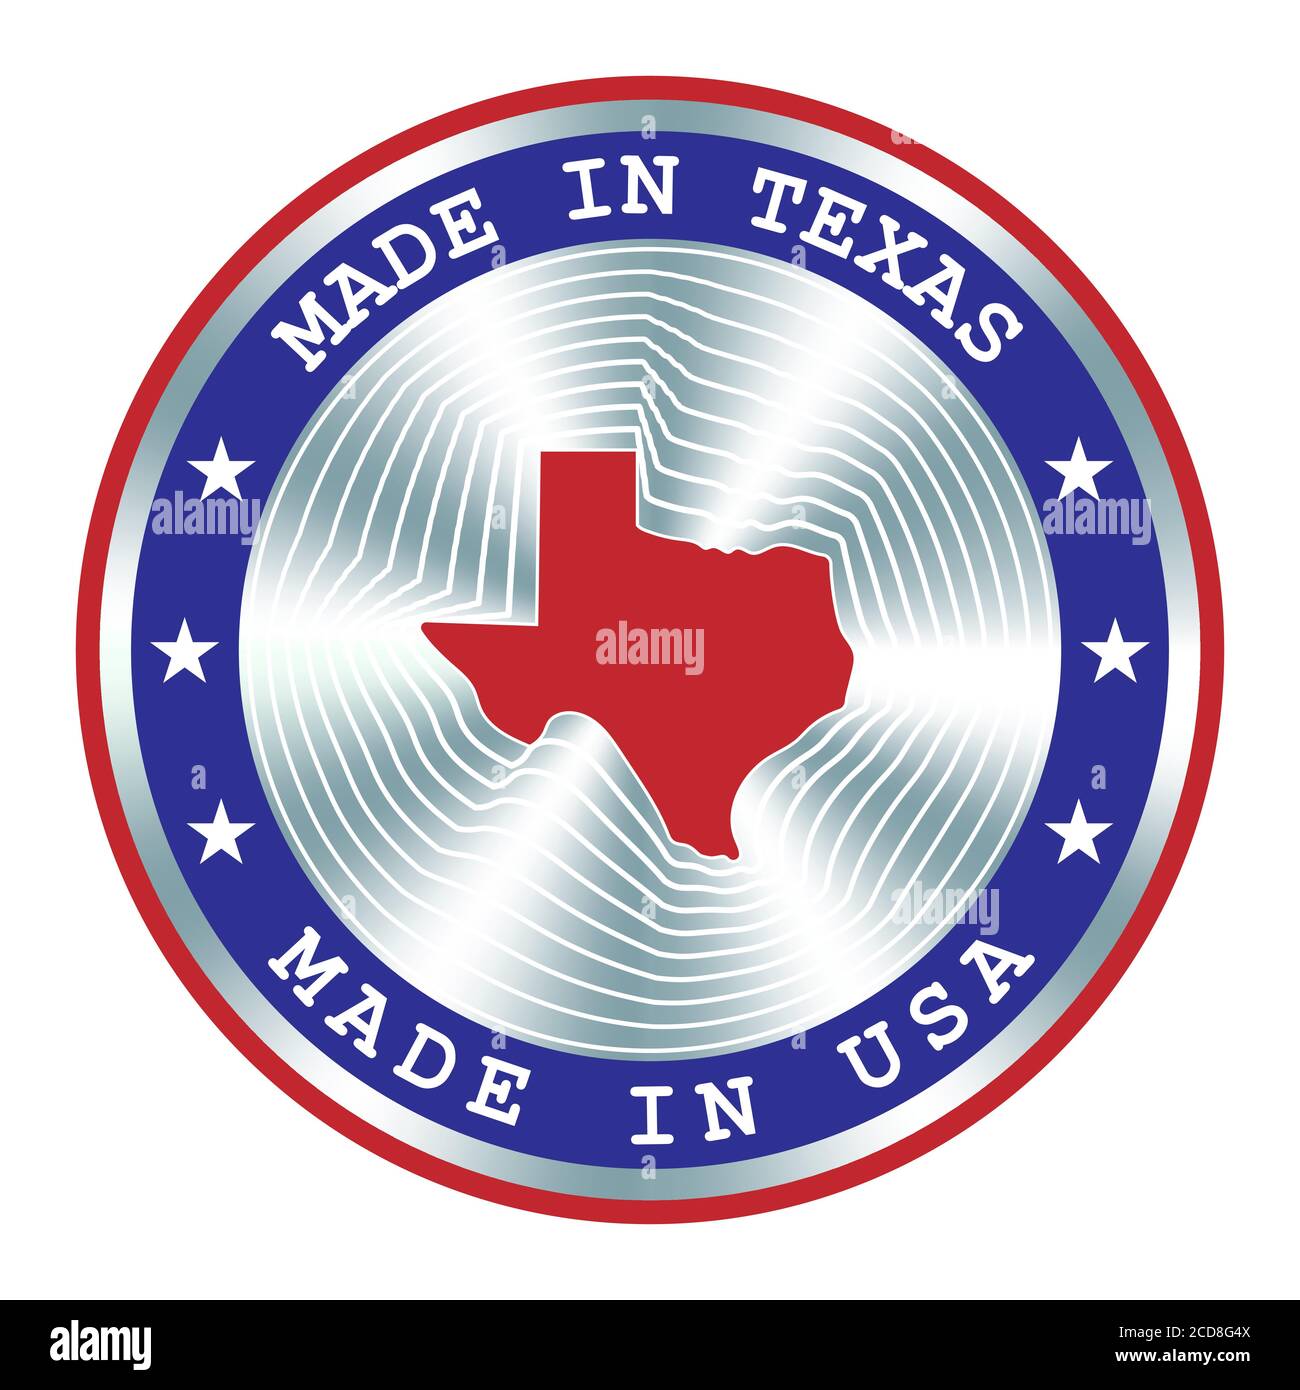 Hergestellt in Texas lokale Produktion Schild, Aufkleber, Siegel, Stempel. Rundes Hologramm-Schild für Etikettendesign und nationale Vermarktung Stock Vektor